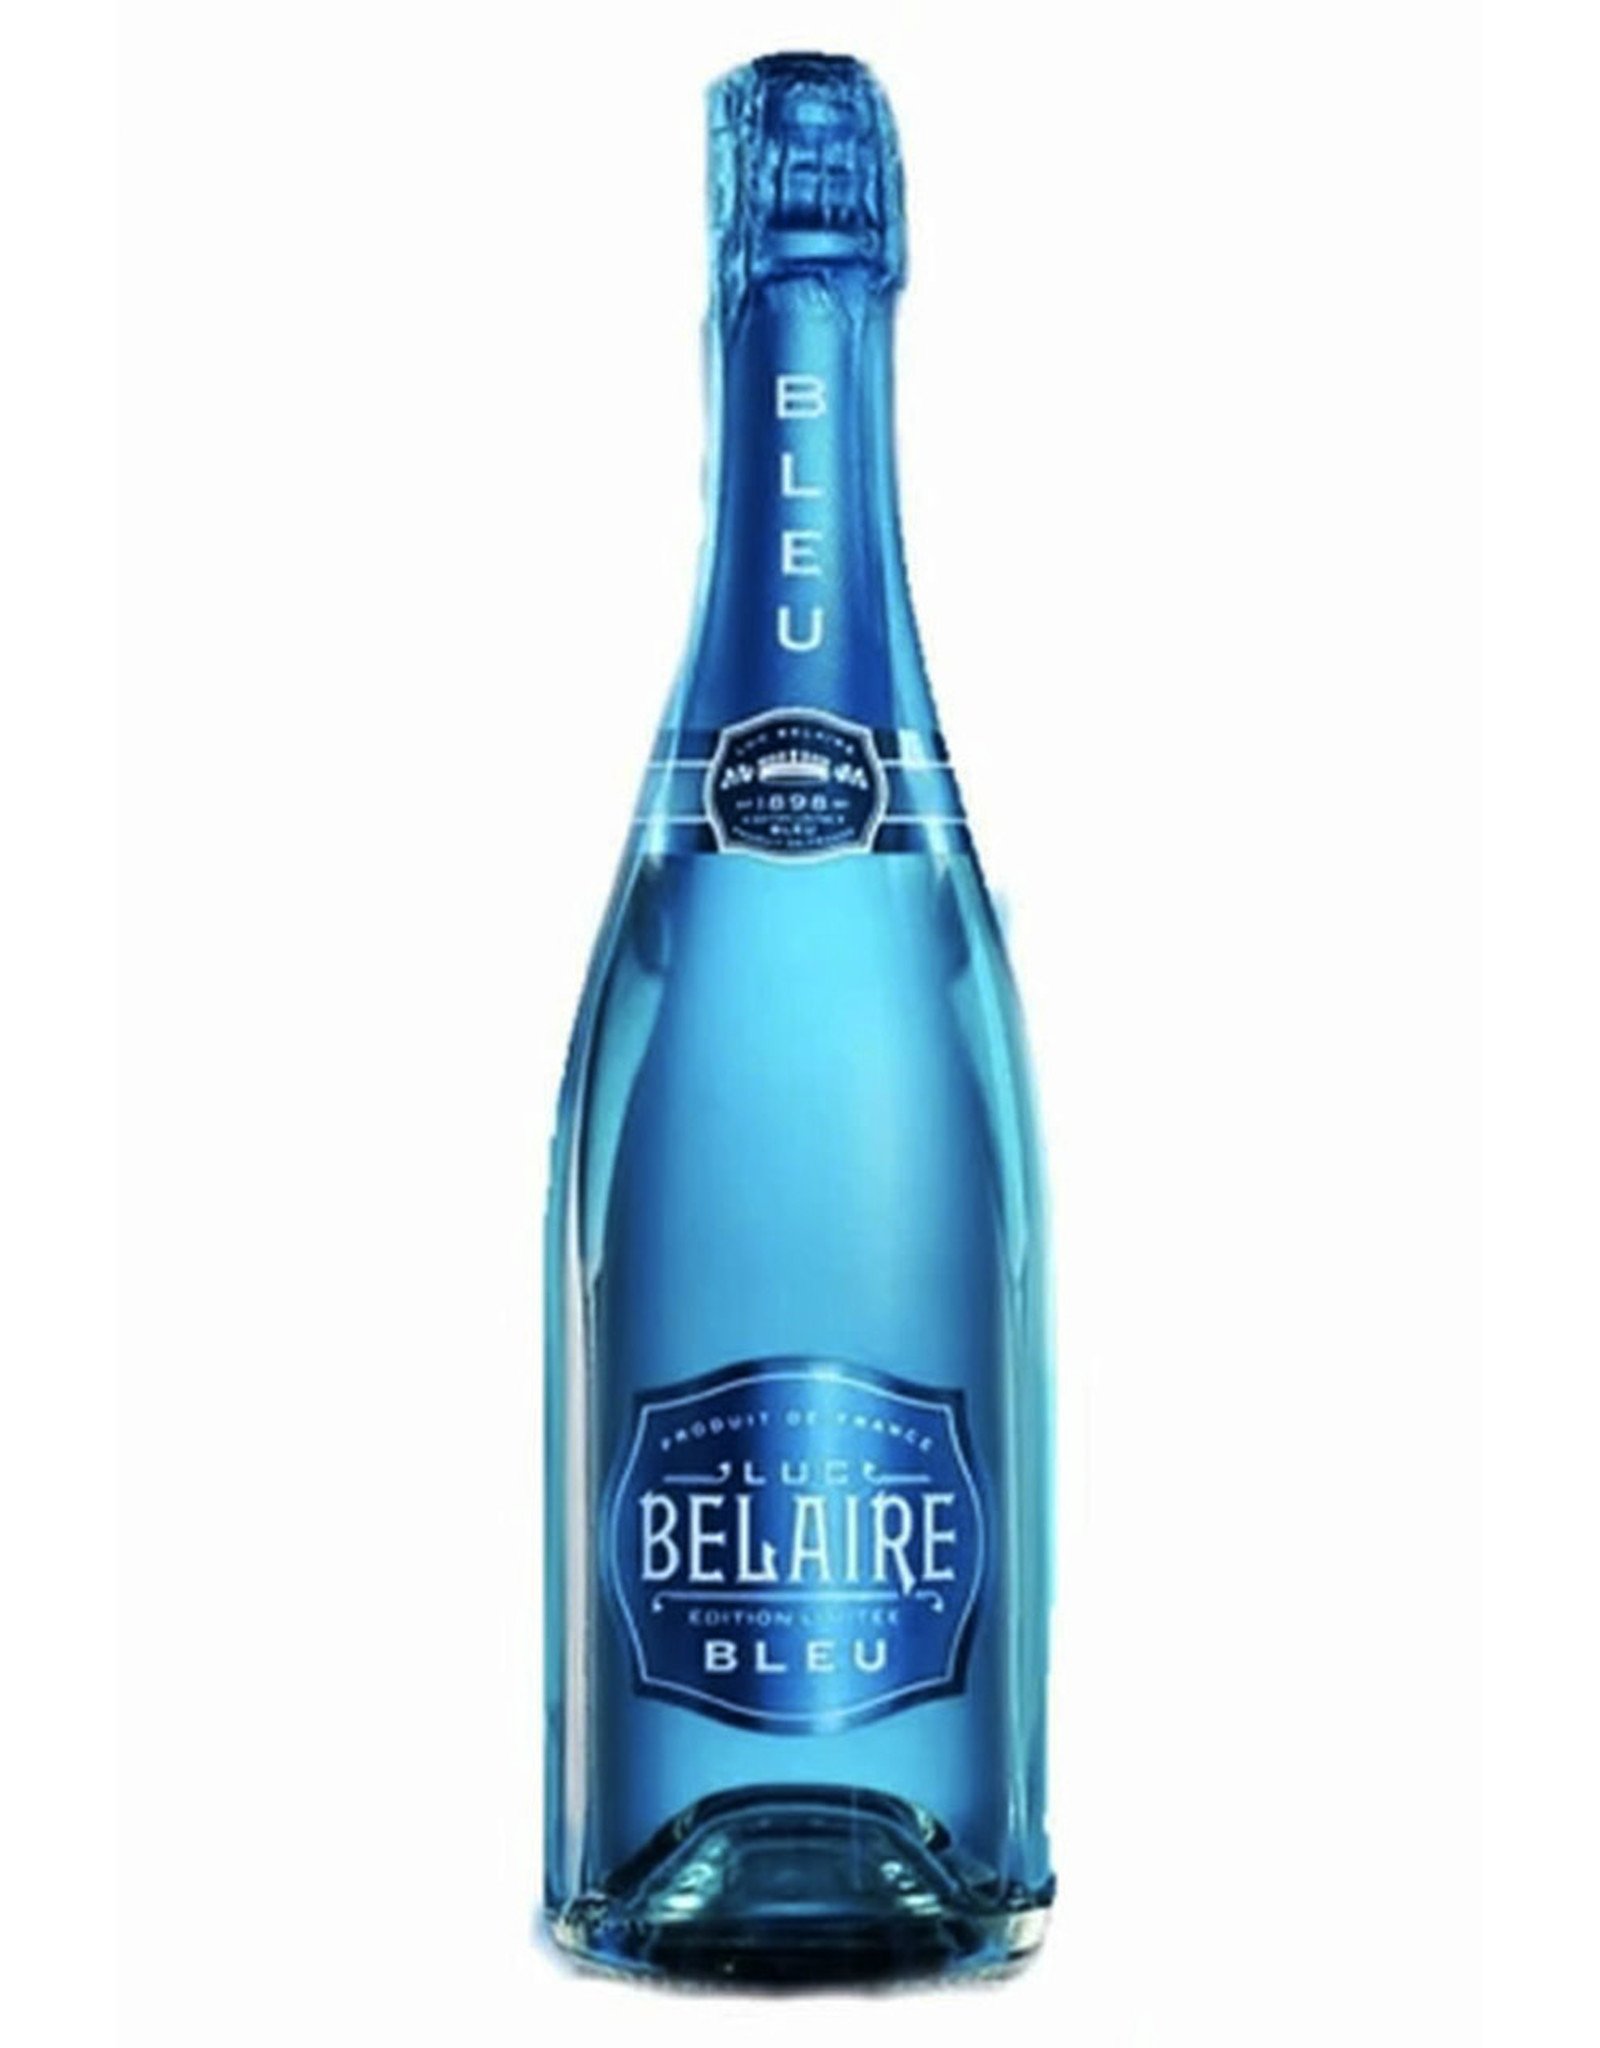 https://cdn.shoplightspeed.com/shops/637462/files/35078671/1600x2048x1/belaire-belaire-blue-champagne.jpg